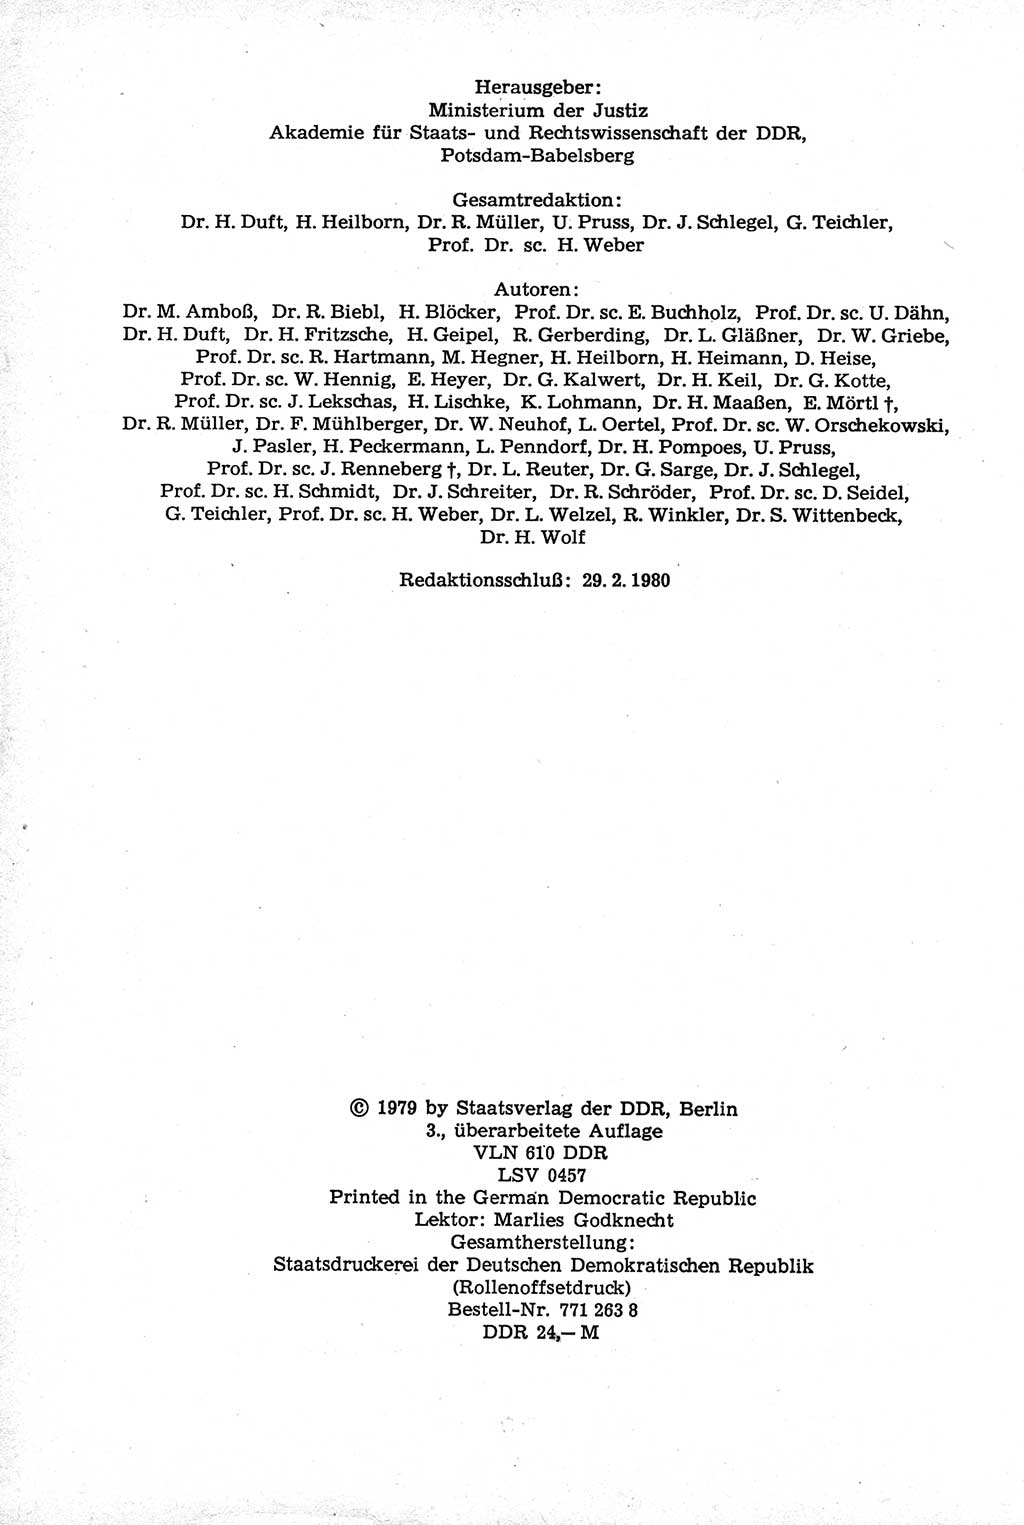 Strafrecht der Deutschen Demokratischen Republik (DDR), Kommentar zum Strafgesetzbuch (StGB) 1981, Seite 4 (Strafr. DDR Komm. StGB 1981, S. 4)